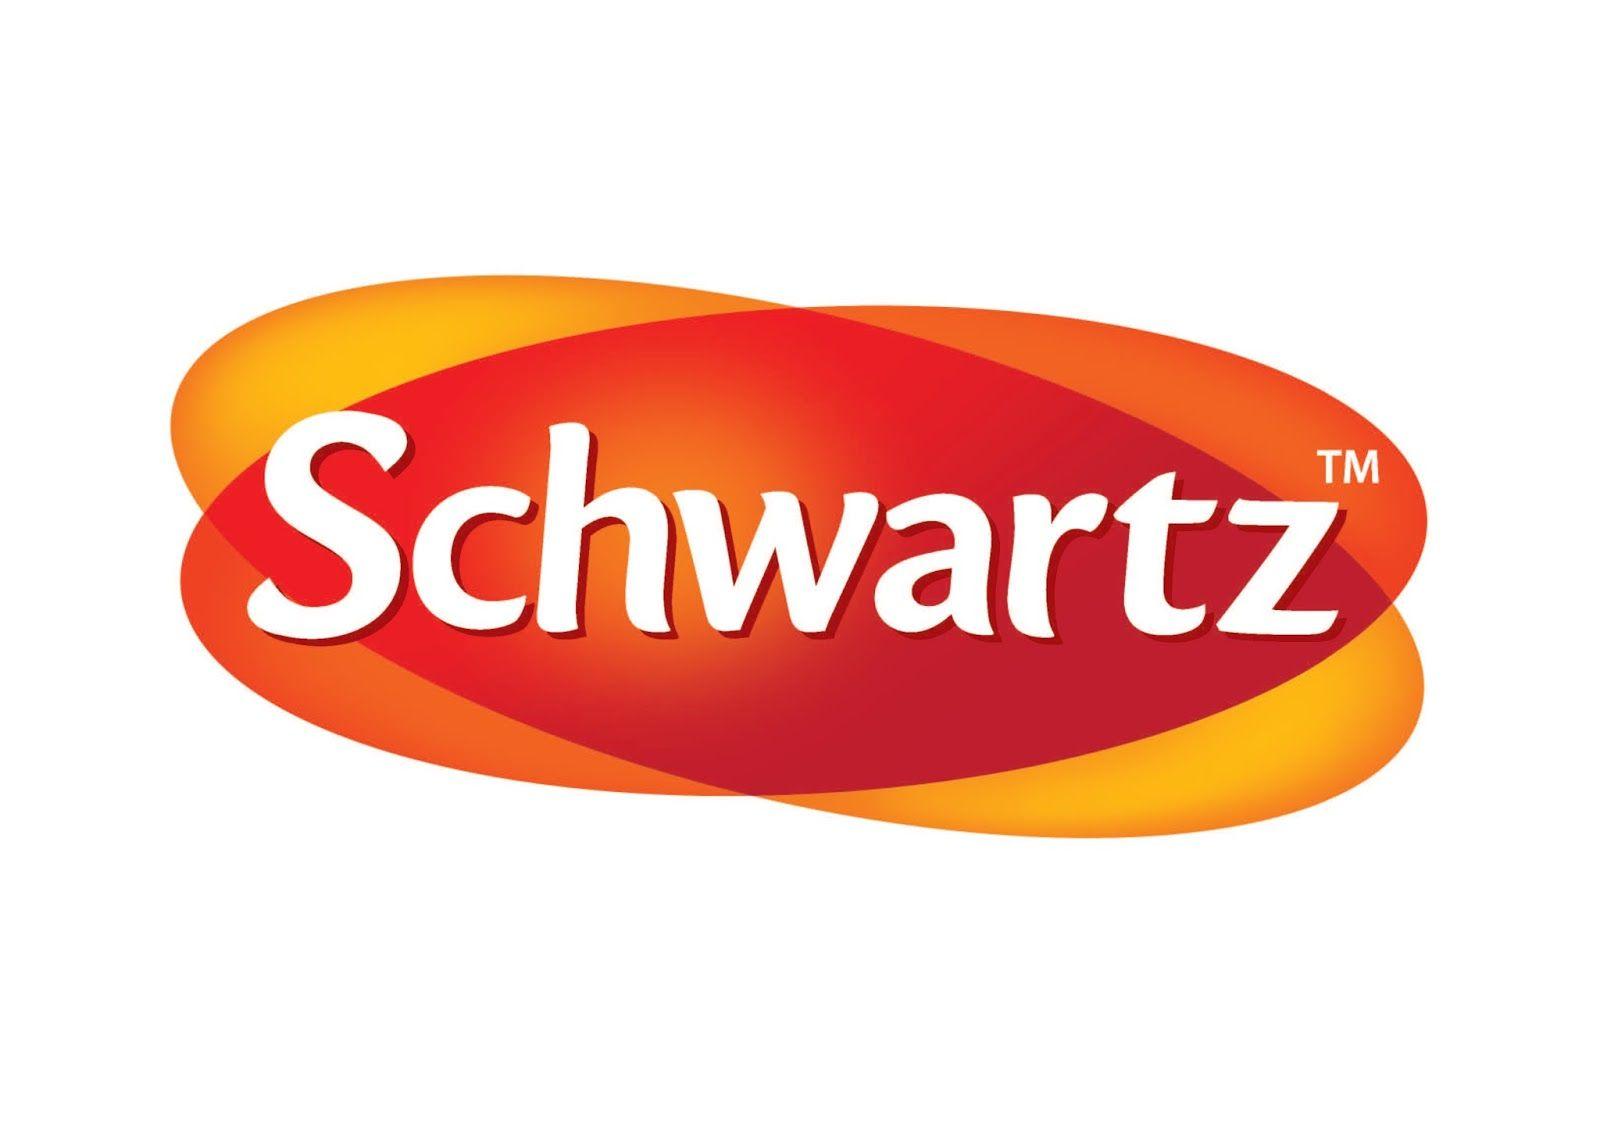 Schwartz Logo - Schwartz Logos